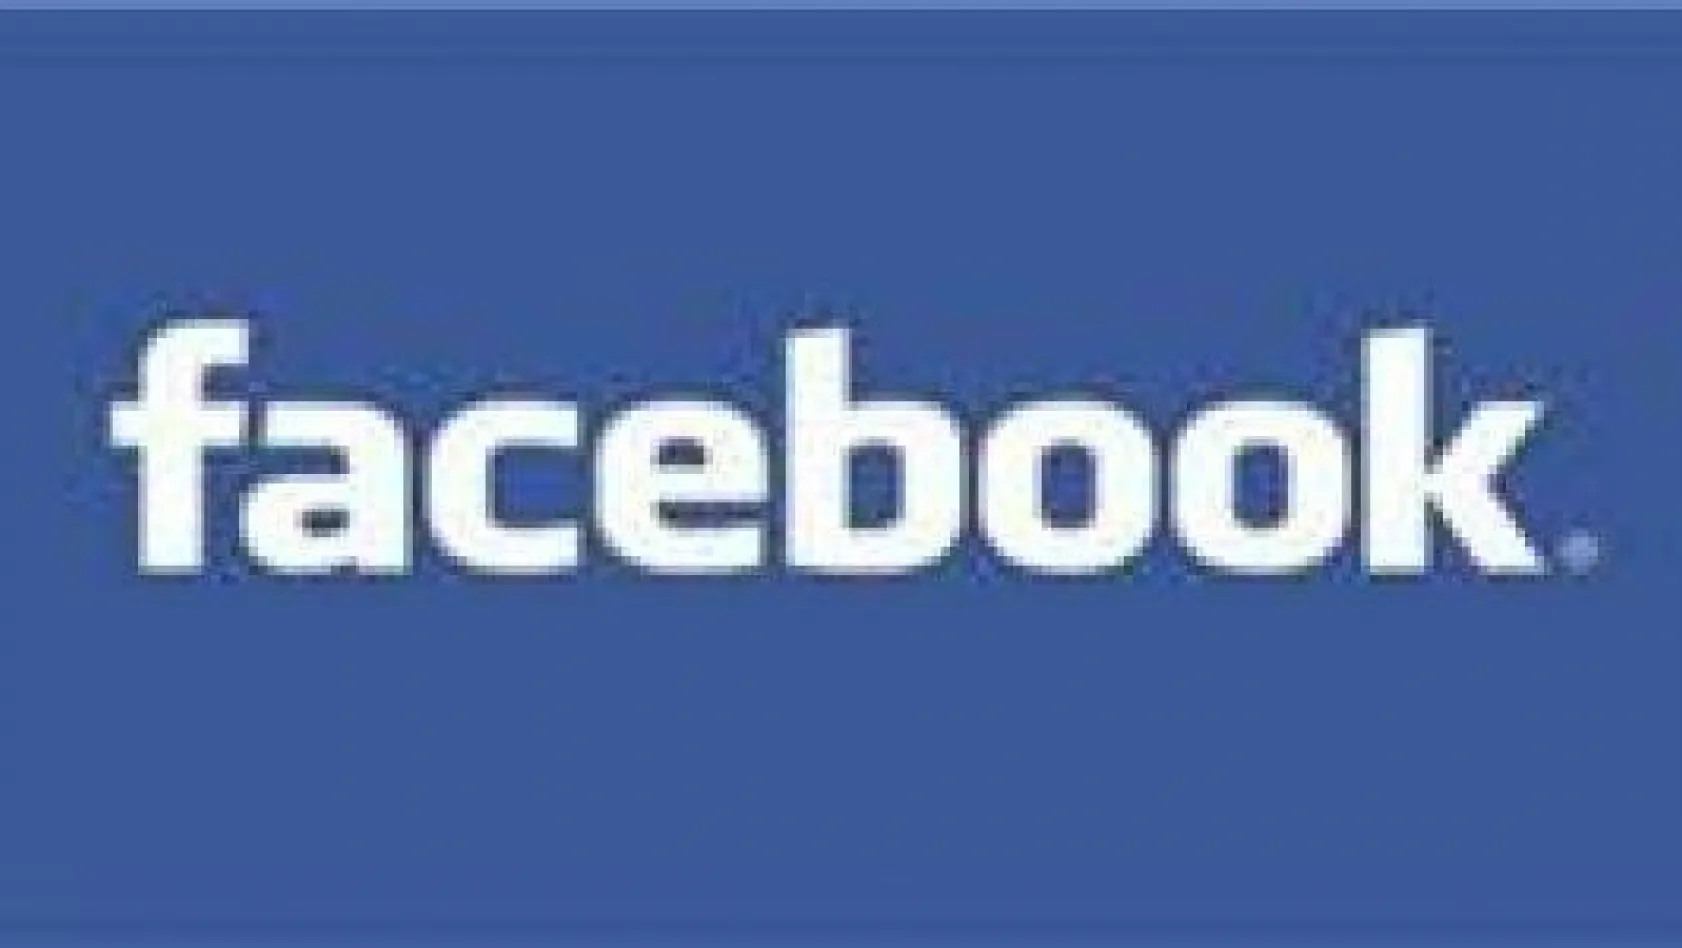 Facebook'a saldırı iddiası